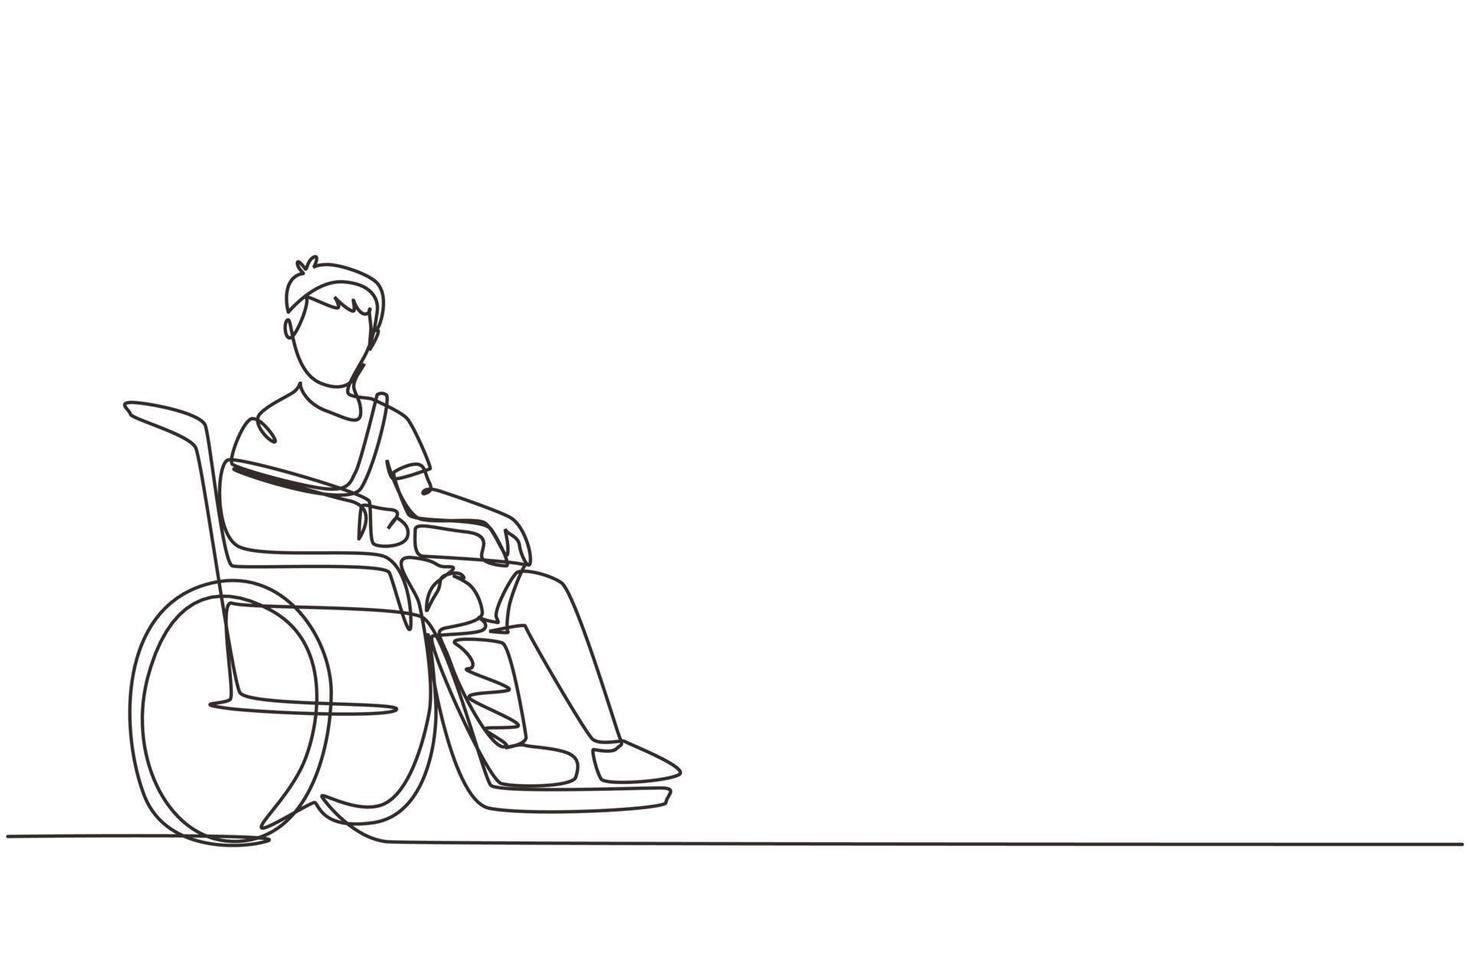 continu één lijntekening gewonde boos jongen in gips of gegoten, zittend in een rolstoel die lijdt aan pijn. been ongeval. gewond jongetje. enkele lijn tekenen ontwerp vector grafische afbeelding